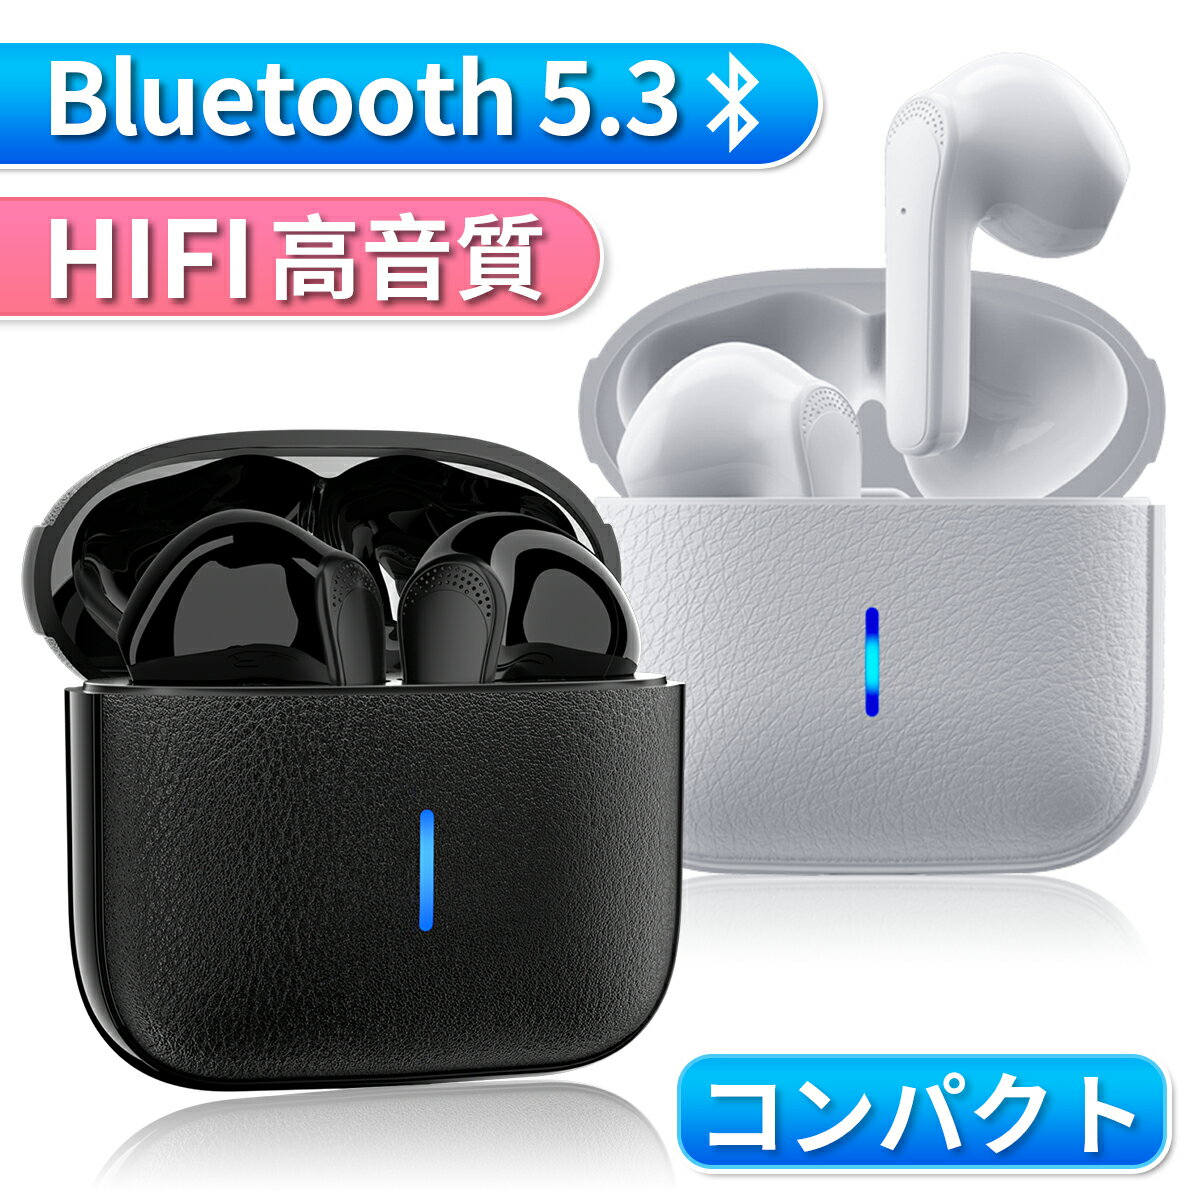 ワイヤレスイヤホン iPhone イヤホン Bluetooth5.3 コンパクト おしゃれ 革ケース ブルートゥース HiFi 高音質 IPX6防水 軽量 左右分離..